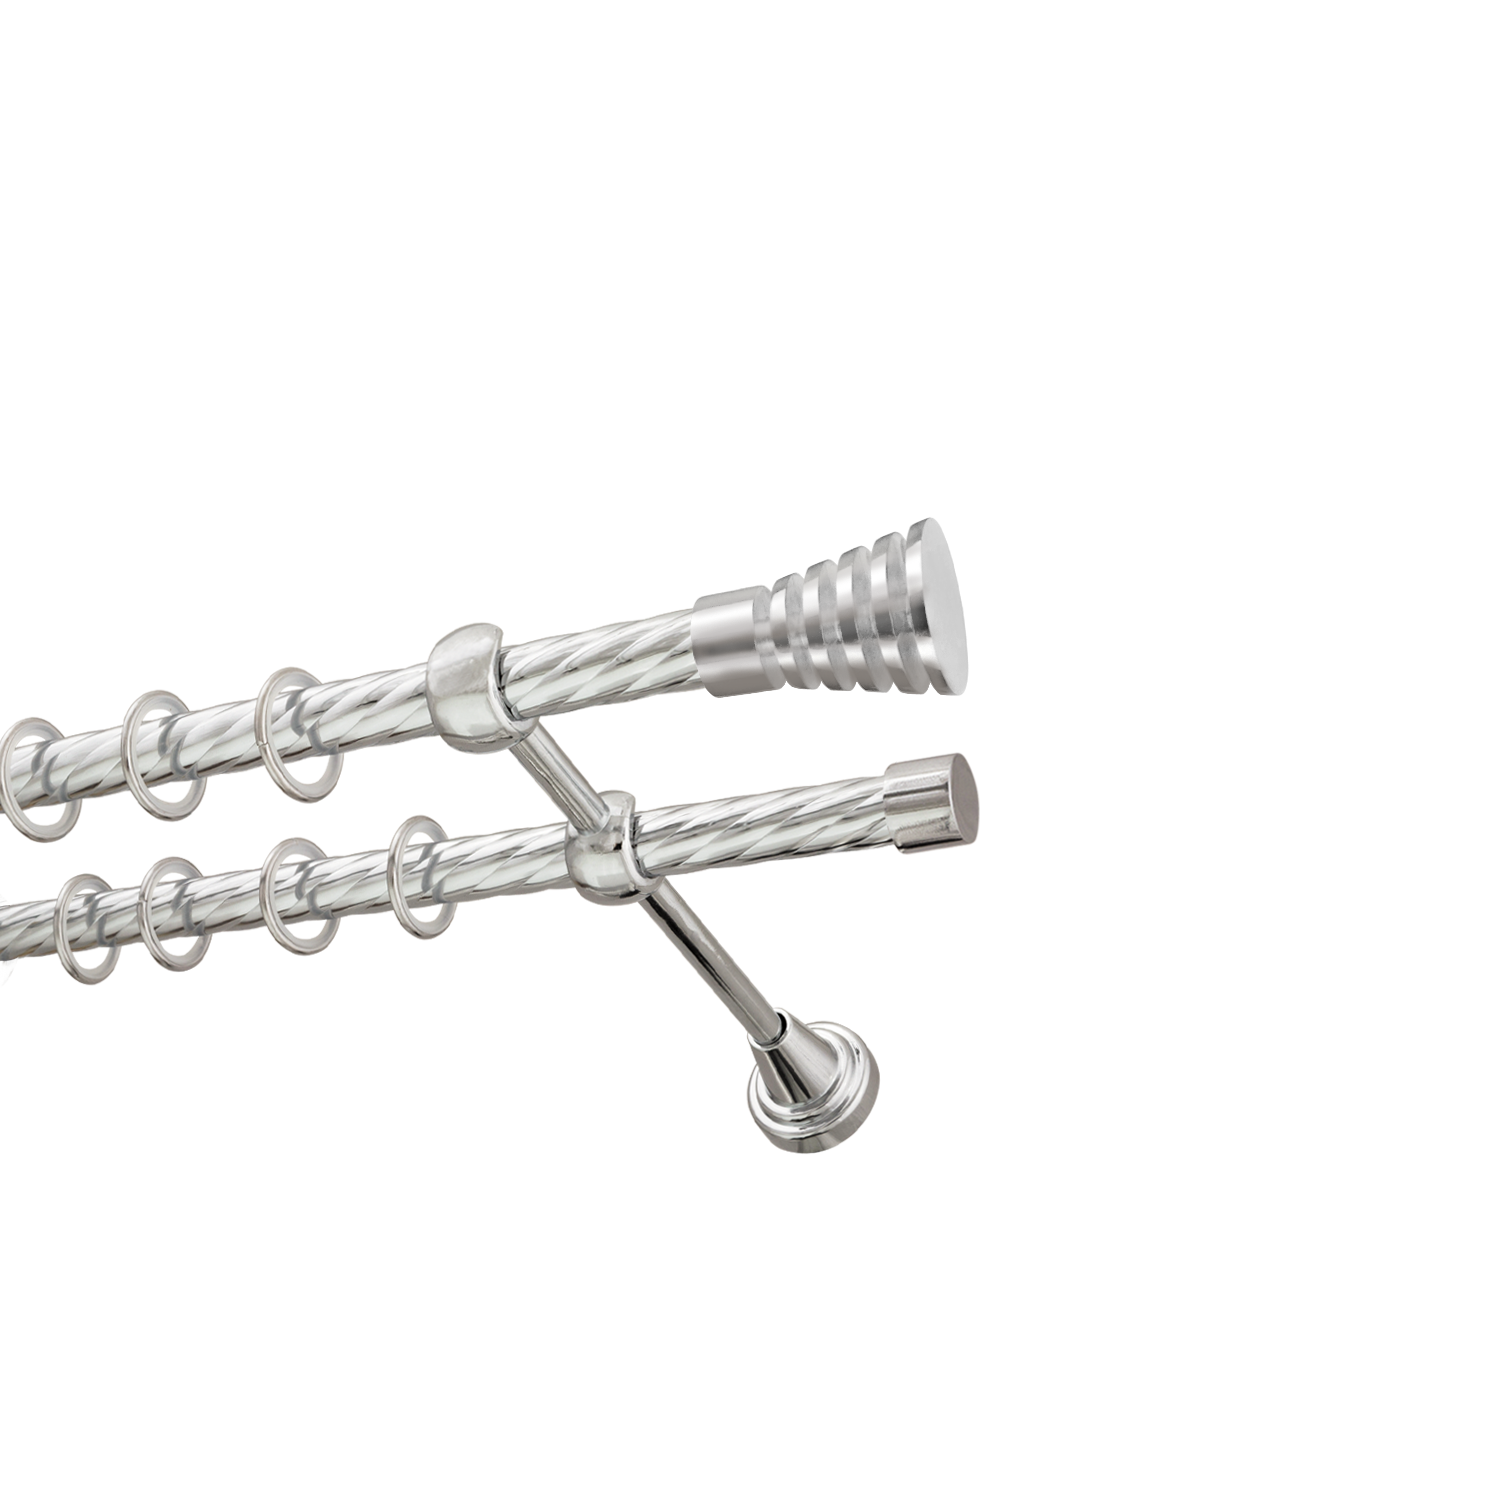 Металлический карниз для штор Верона, двухрядный 16/16 мм, серебро, витая штанга, длина 200 см